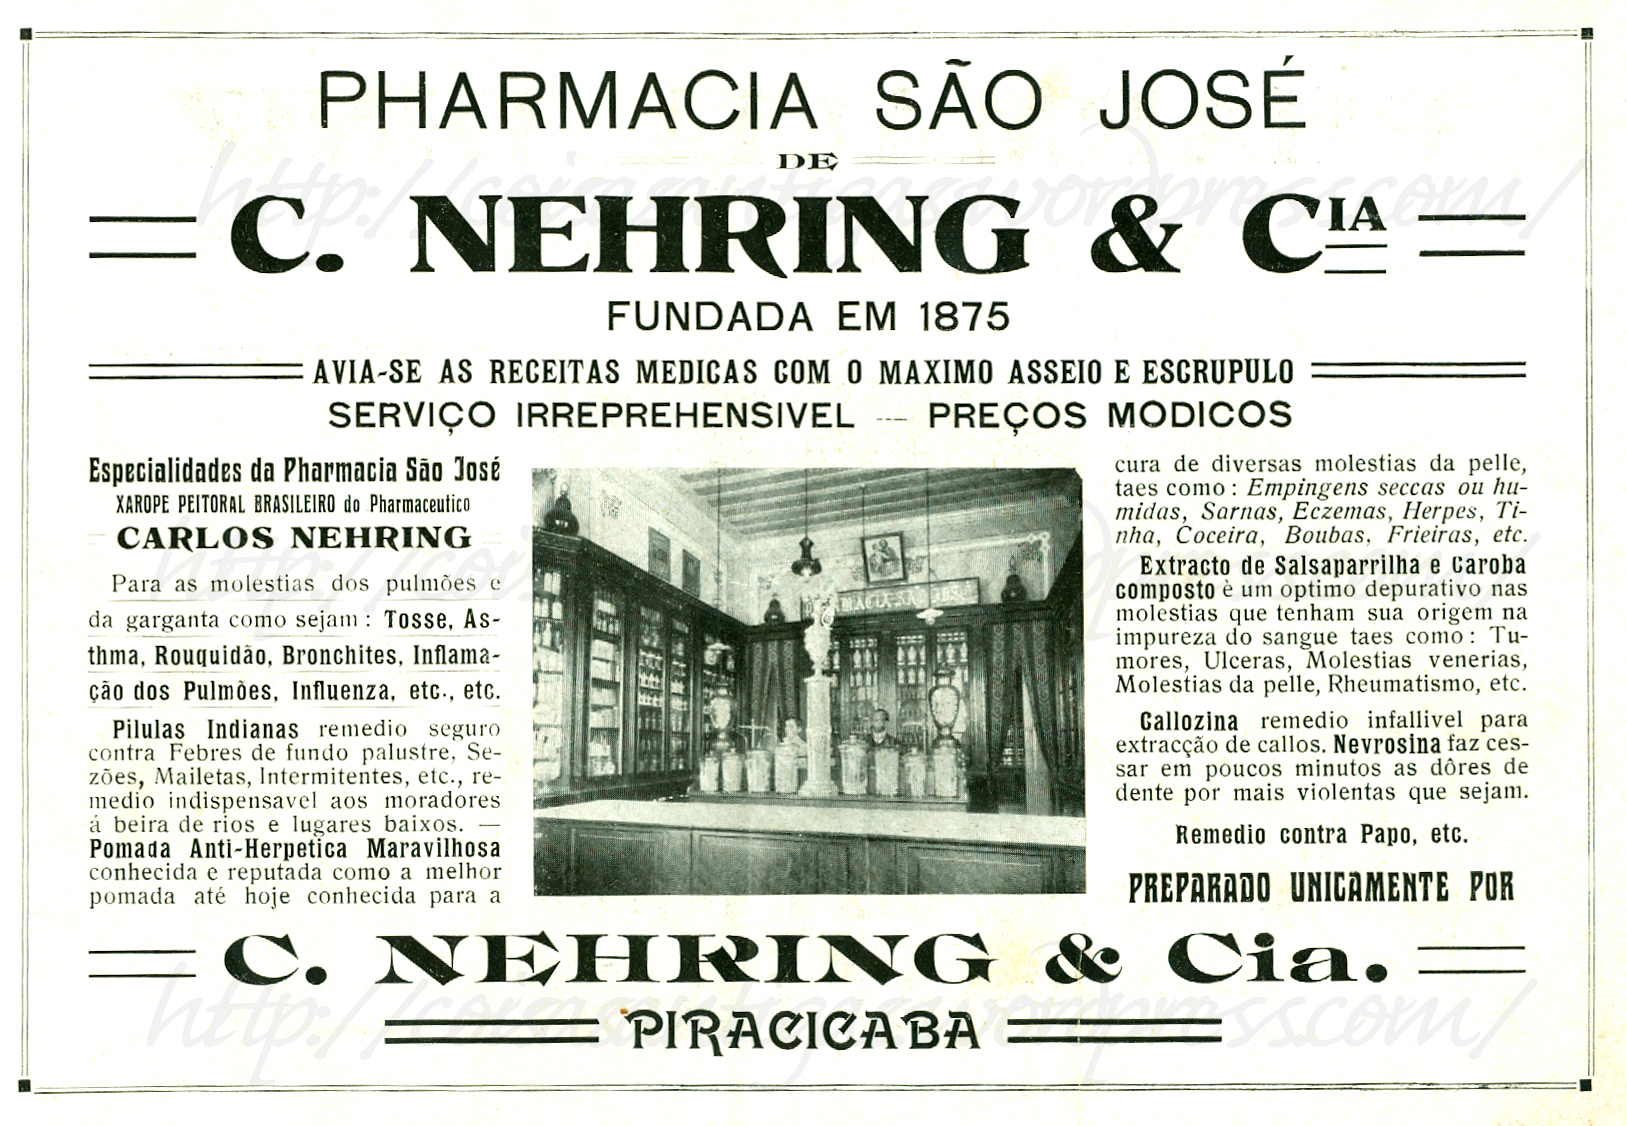 Digitalização de anúncio antigo da Pharmacia São José. Nele, há uma foto do interior da farmácia e diversos textos, como “Pharmacia São José. C. Nehring & Cia. Fundada em 1875”. 